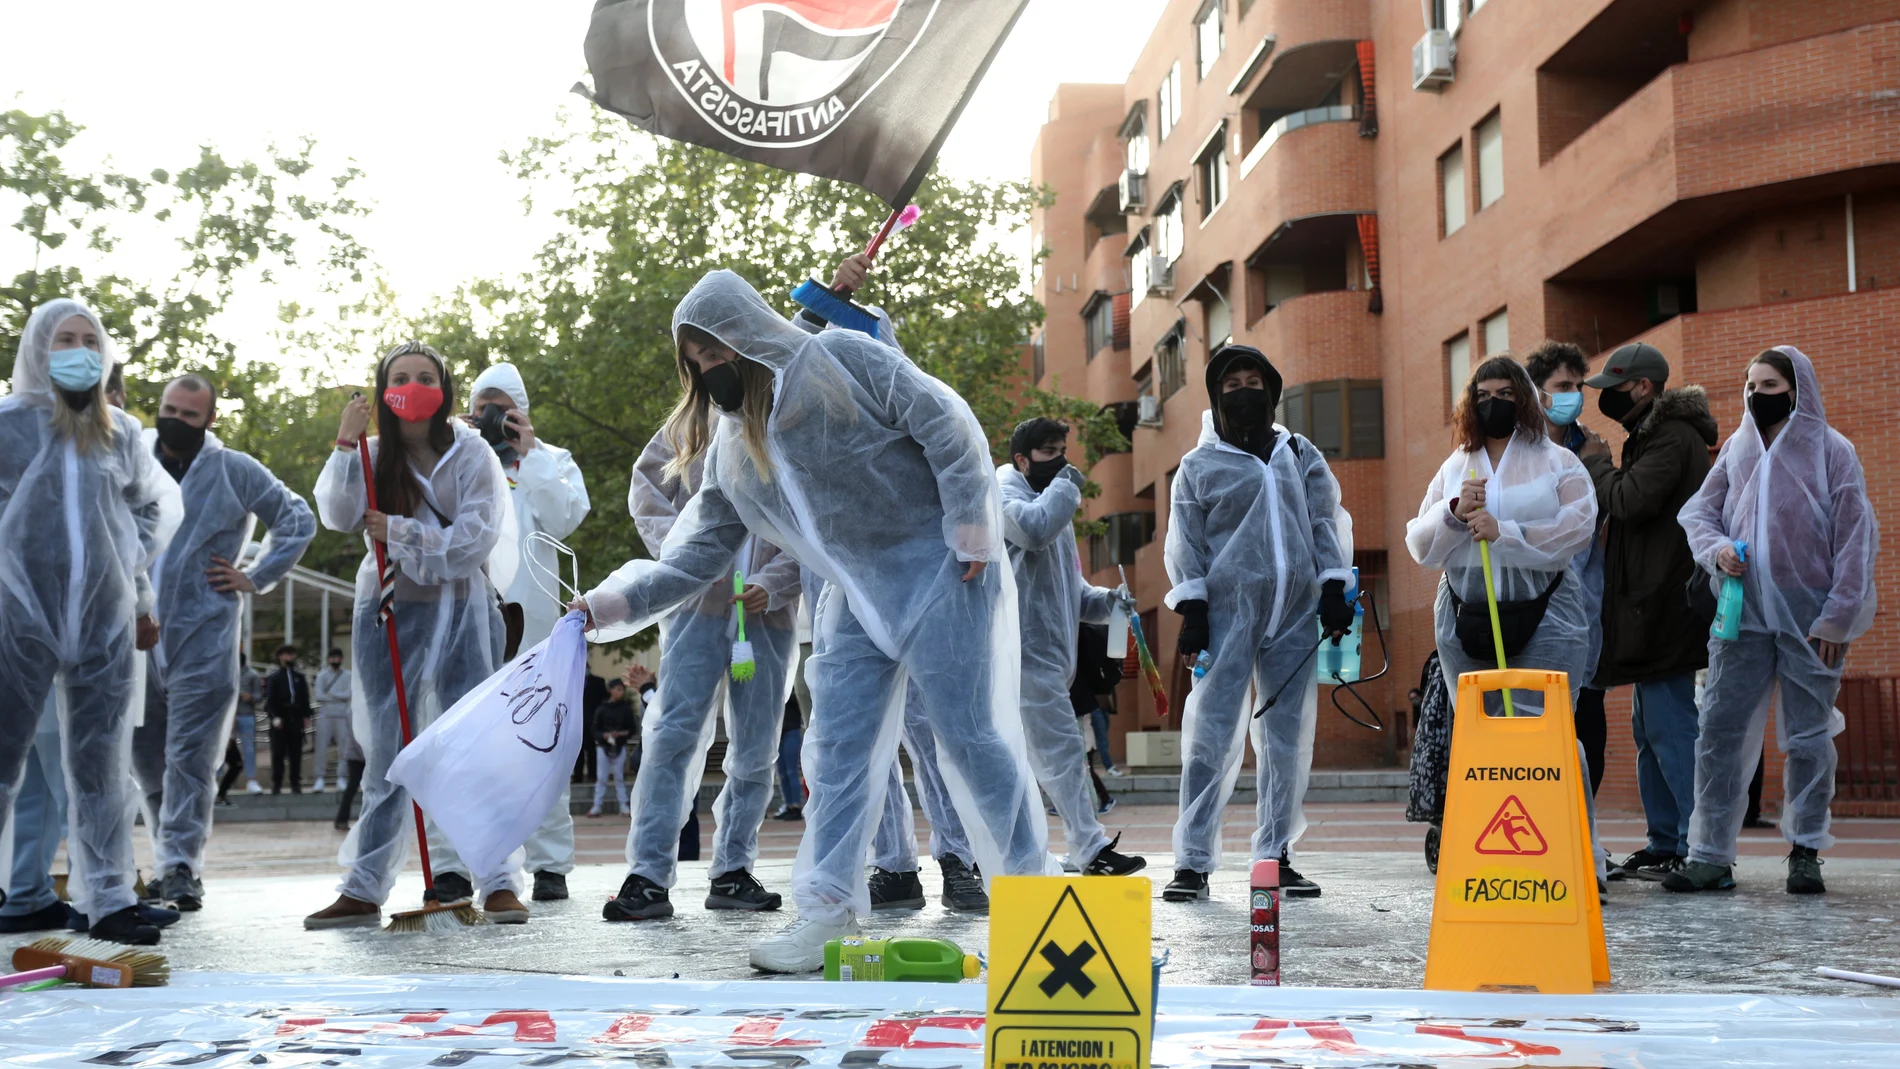 Varias personas durante el acto "Desinfecta Vallekas del Fascismo" en la "Plaza Roja" de Vallecas08/04/2021